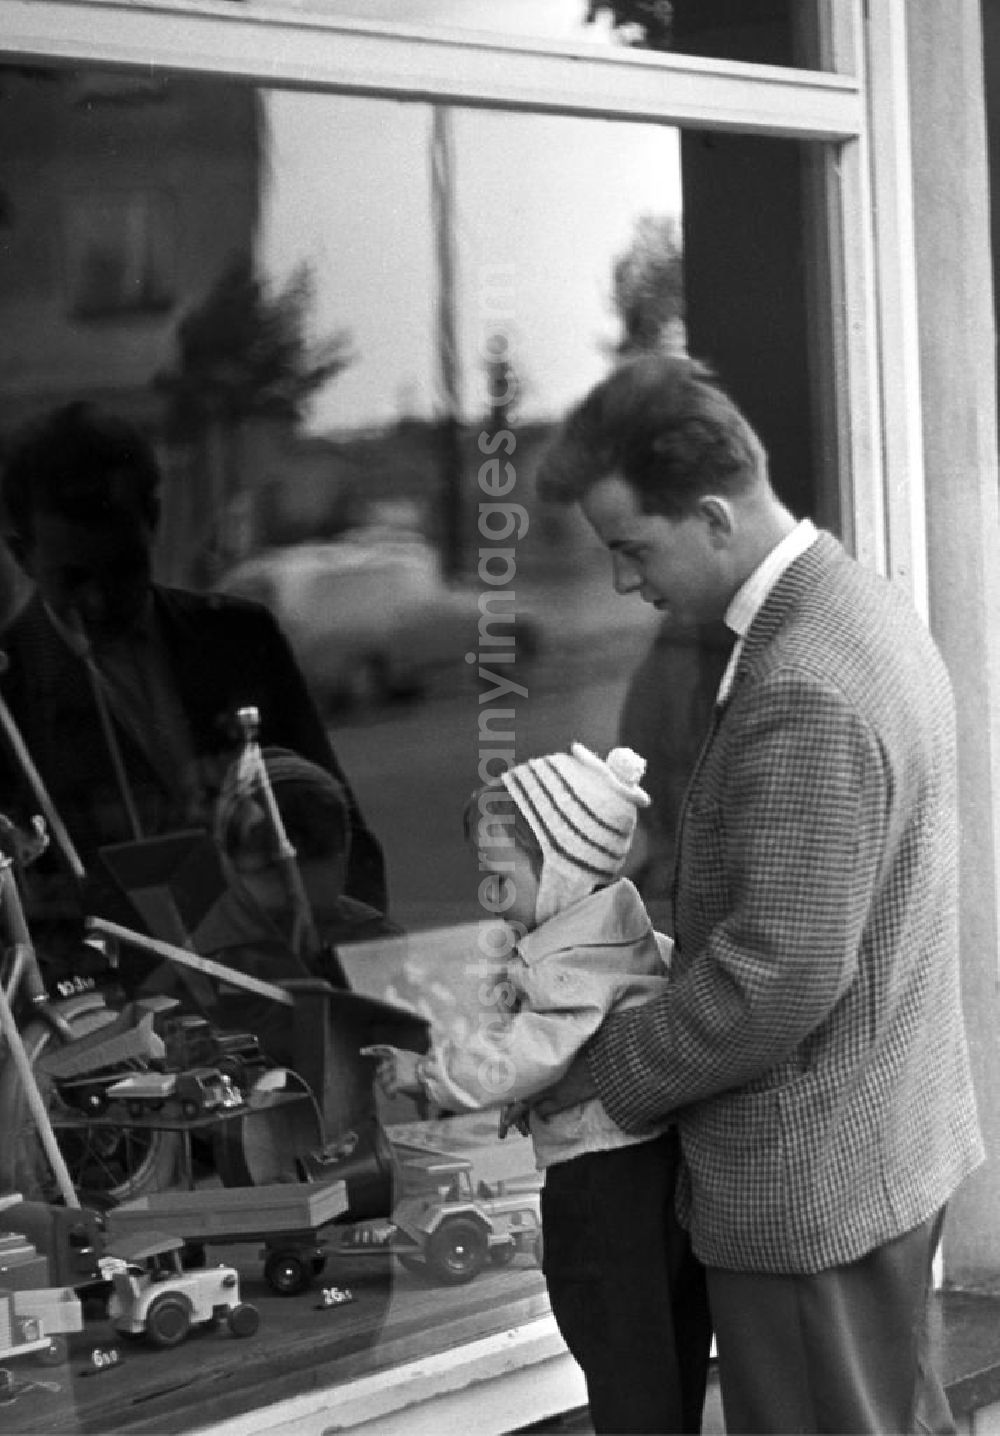 GDR photo archive: Dresden - Dresden 12.6.1962 Das will ich haben! - Ein kleiner Junge schaut neugierig durch das Schaufenster eines Dresdner Spielwarengeschäftes und zeigt auf die ausgestellten Autos und LKWs.